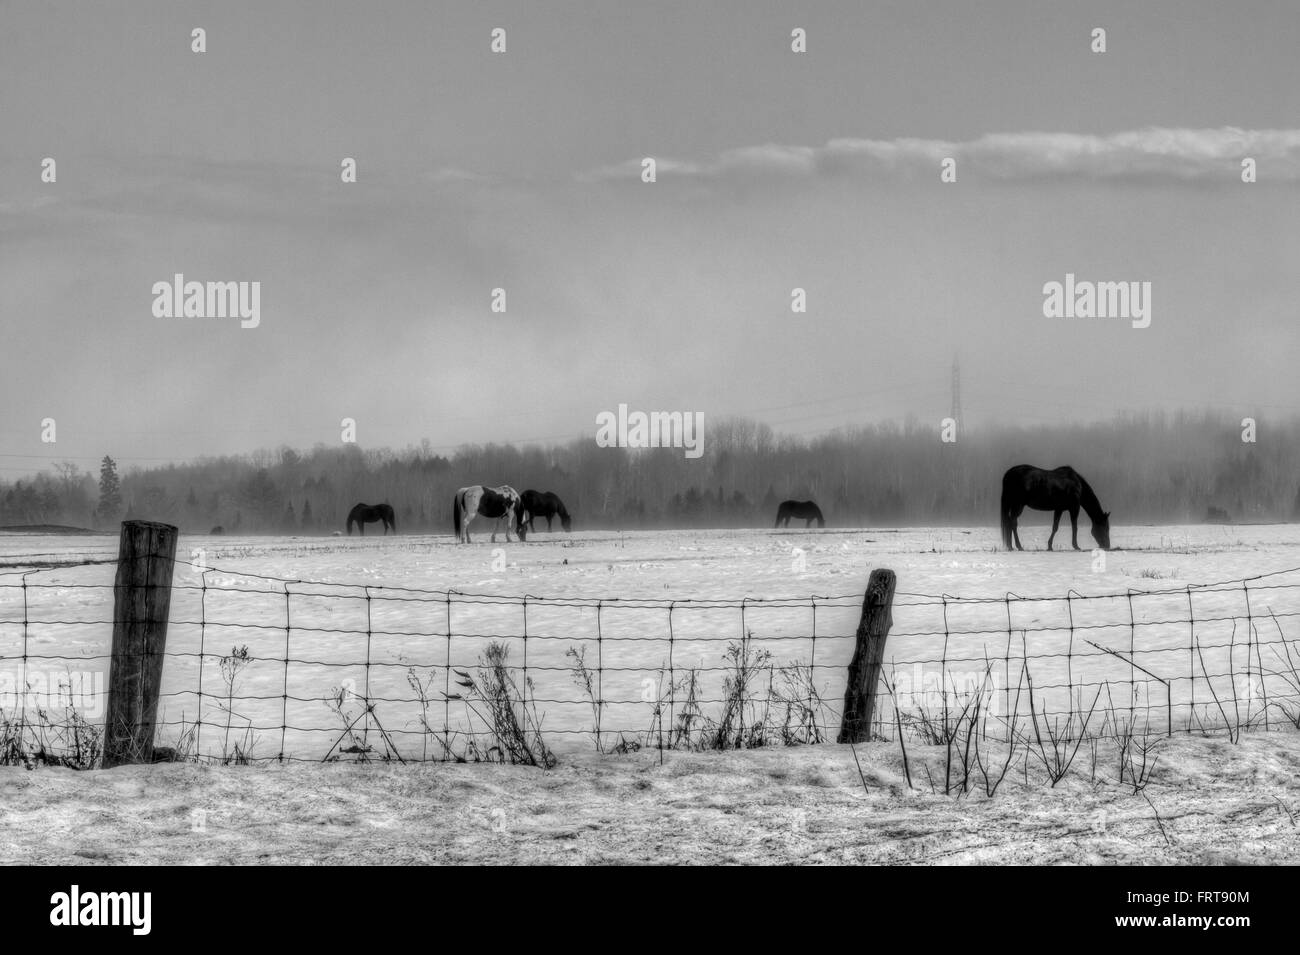 Quatre chevaux sur la glace d'un pâturage. Image en noir et blanc. Banque D'Images